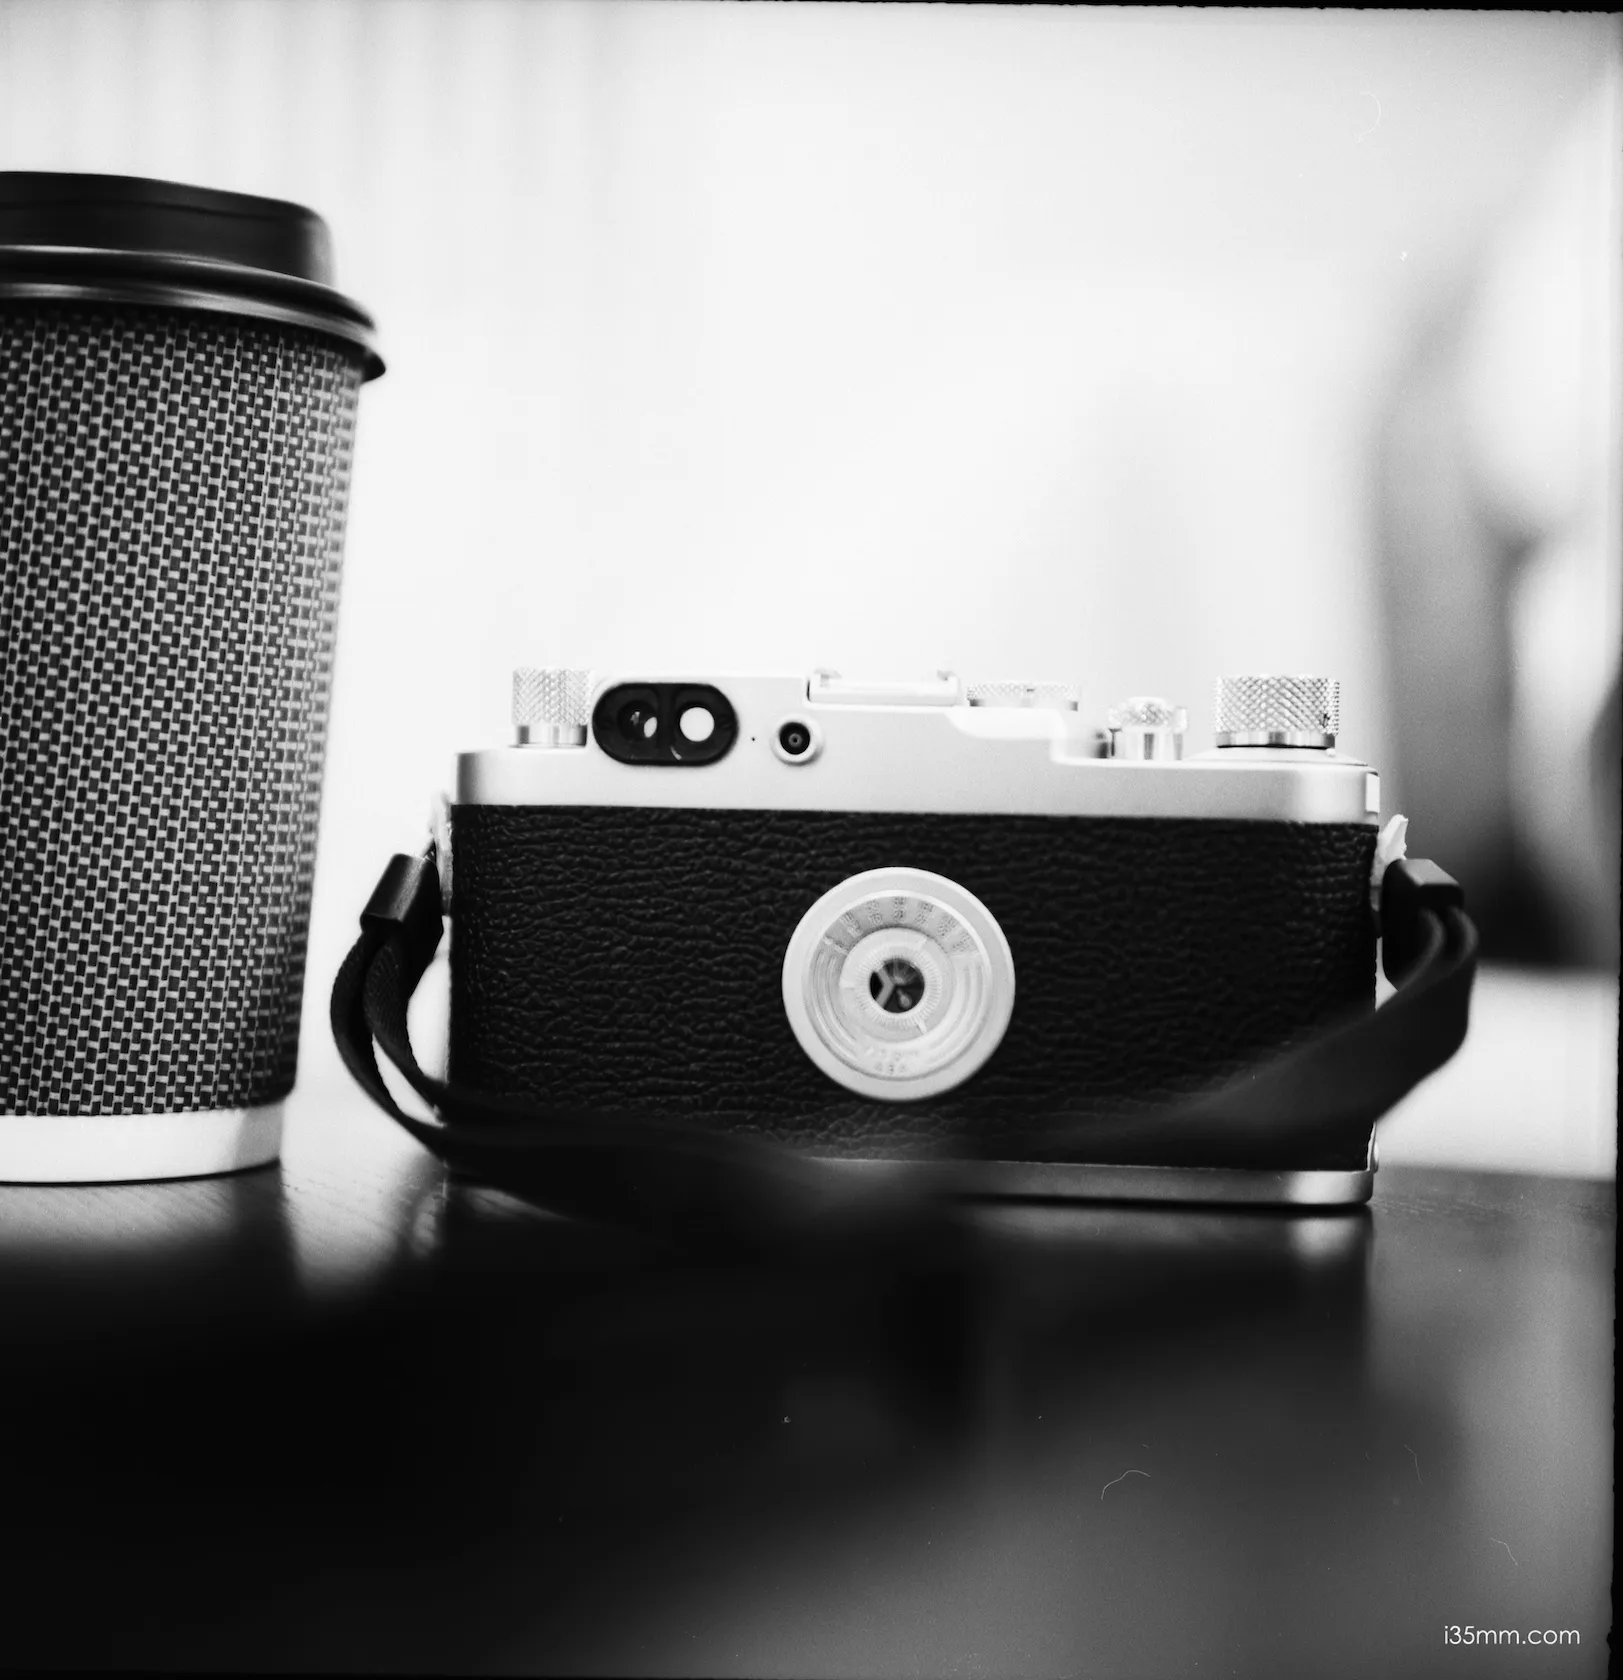 Leica IIIG